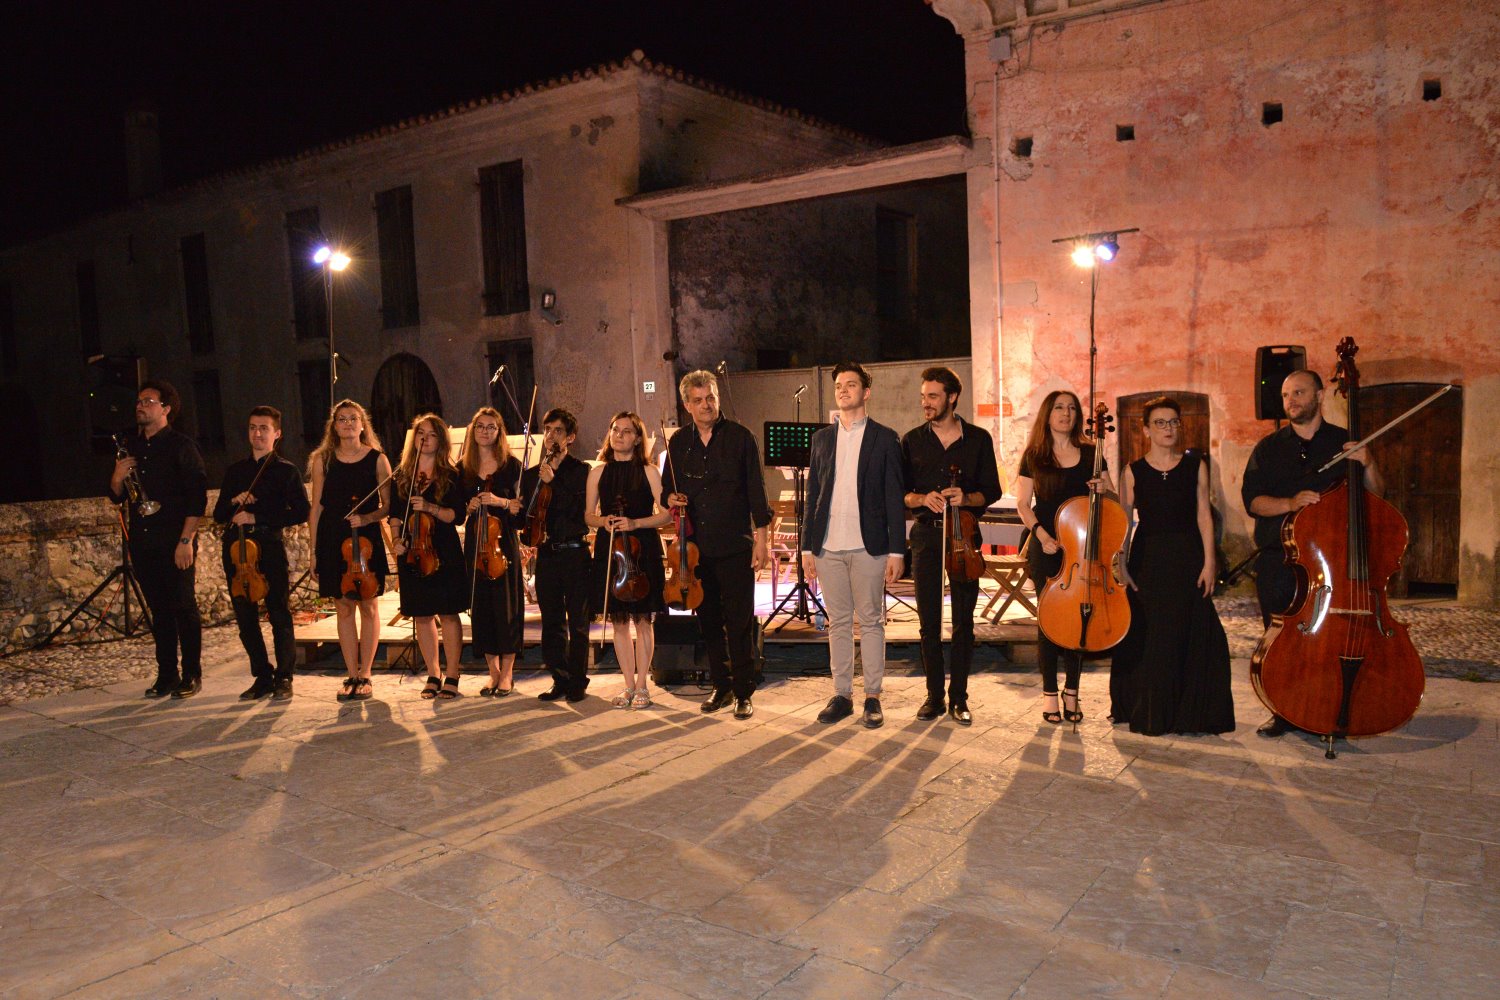 La Piccola Orchestra Veneta, diretta dal Maestro Giancarlo Nadai, e il soprano Loredana Zanchetta incantano il pubblico a “Musica sotto le stelle”.